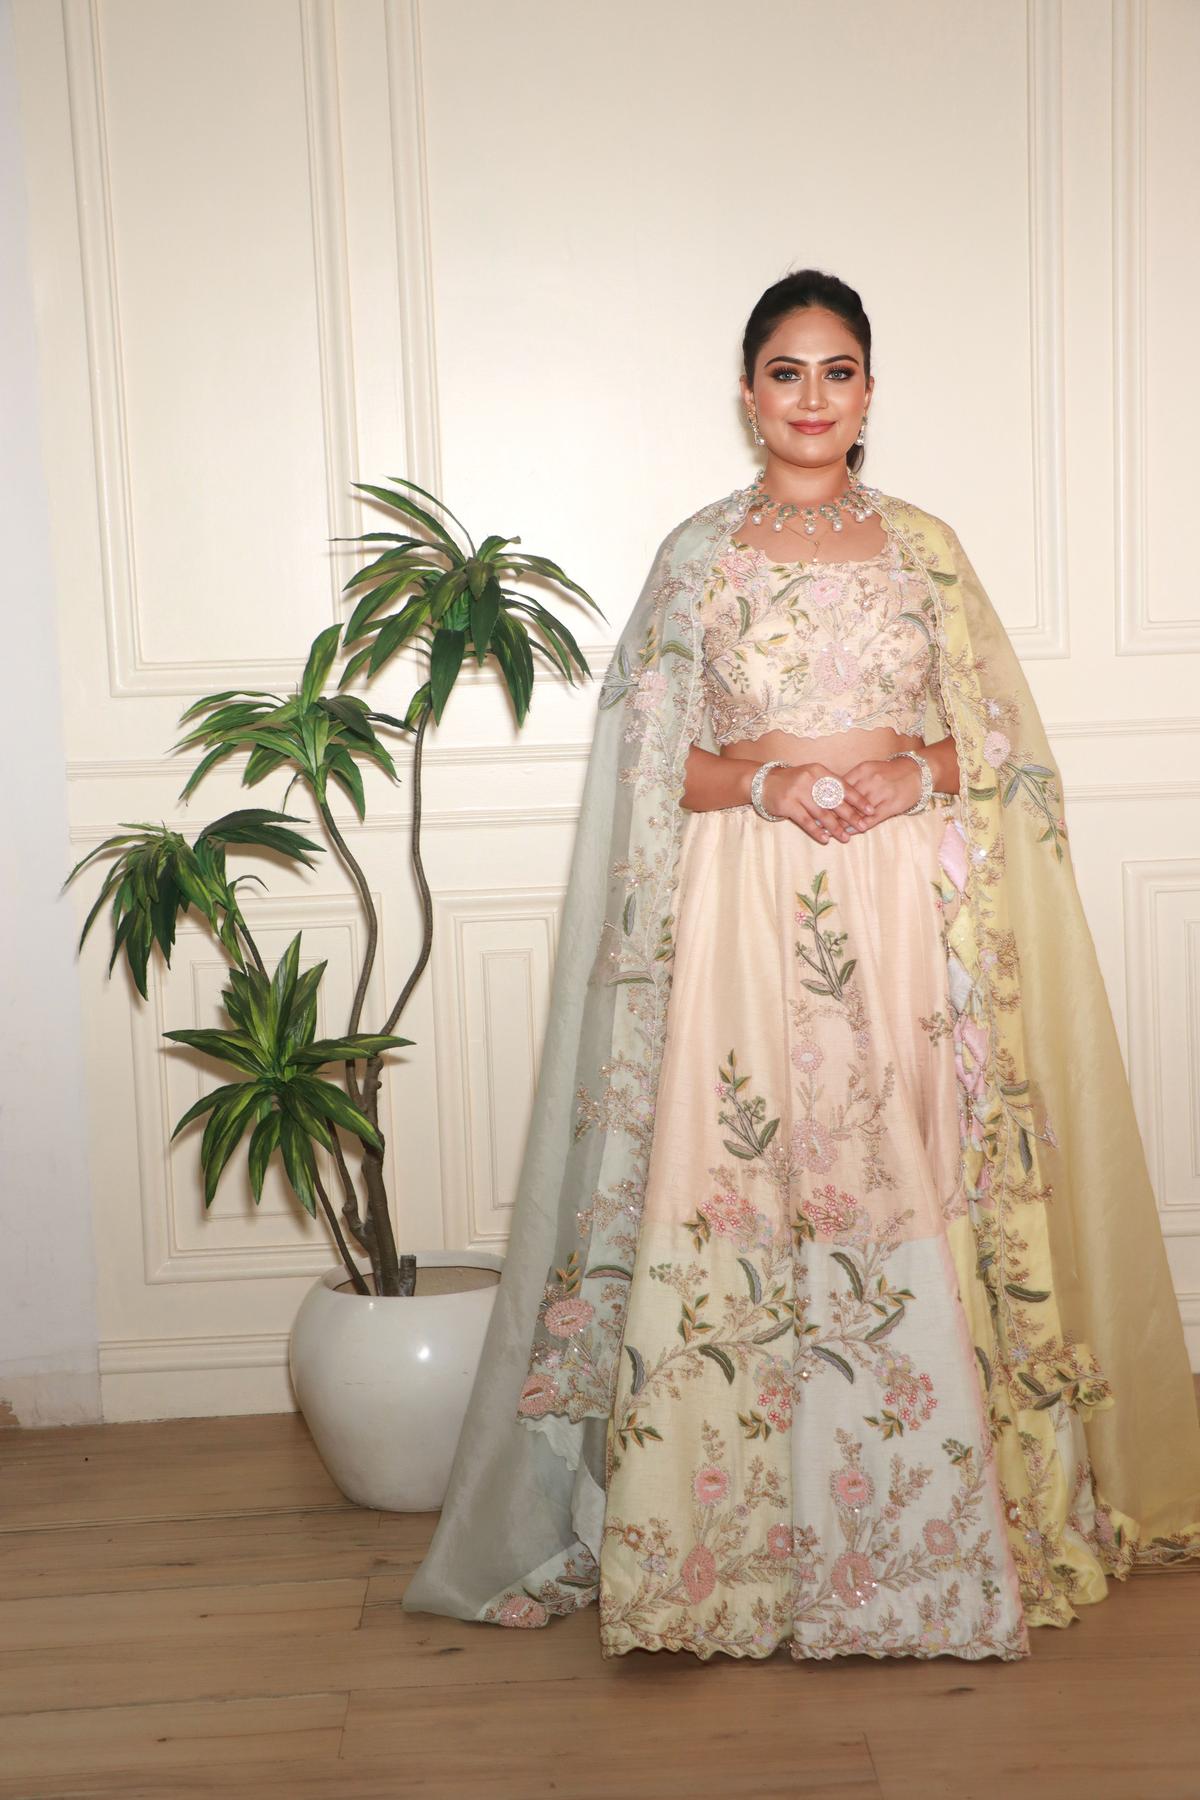 Sonam Kapoor's bridal lehenga to be designed by Anamika Khanna?